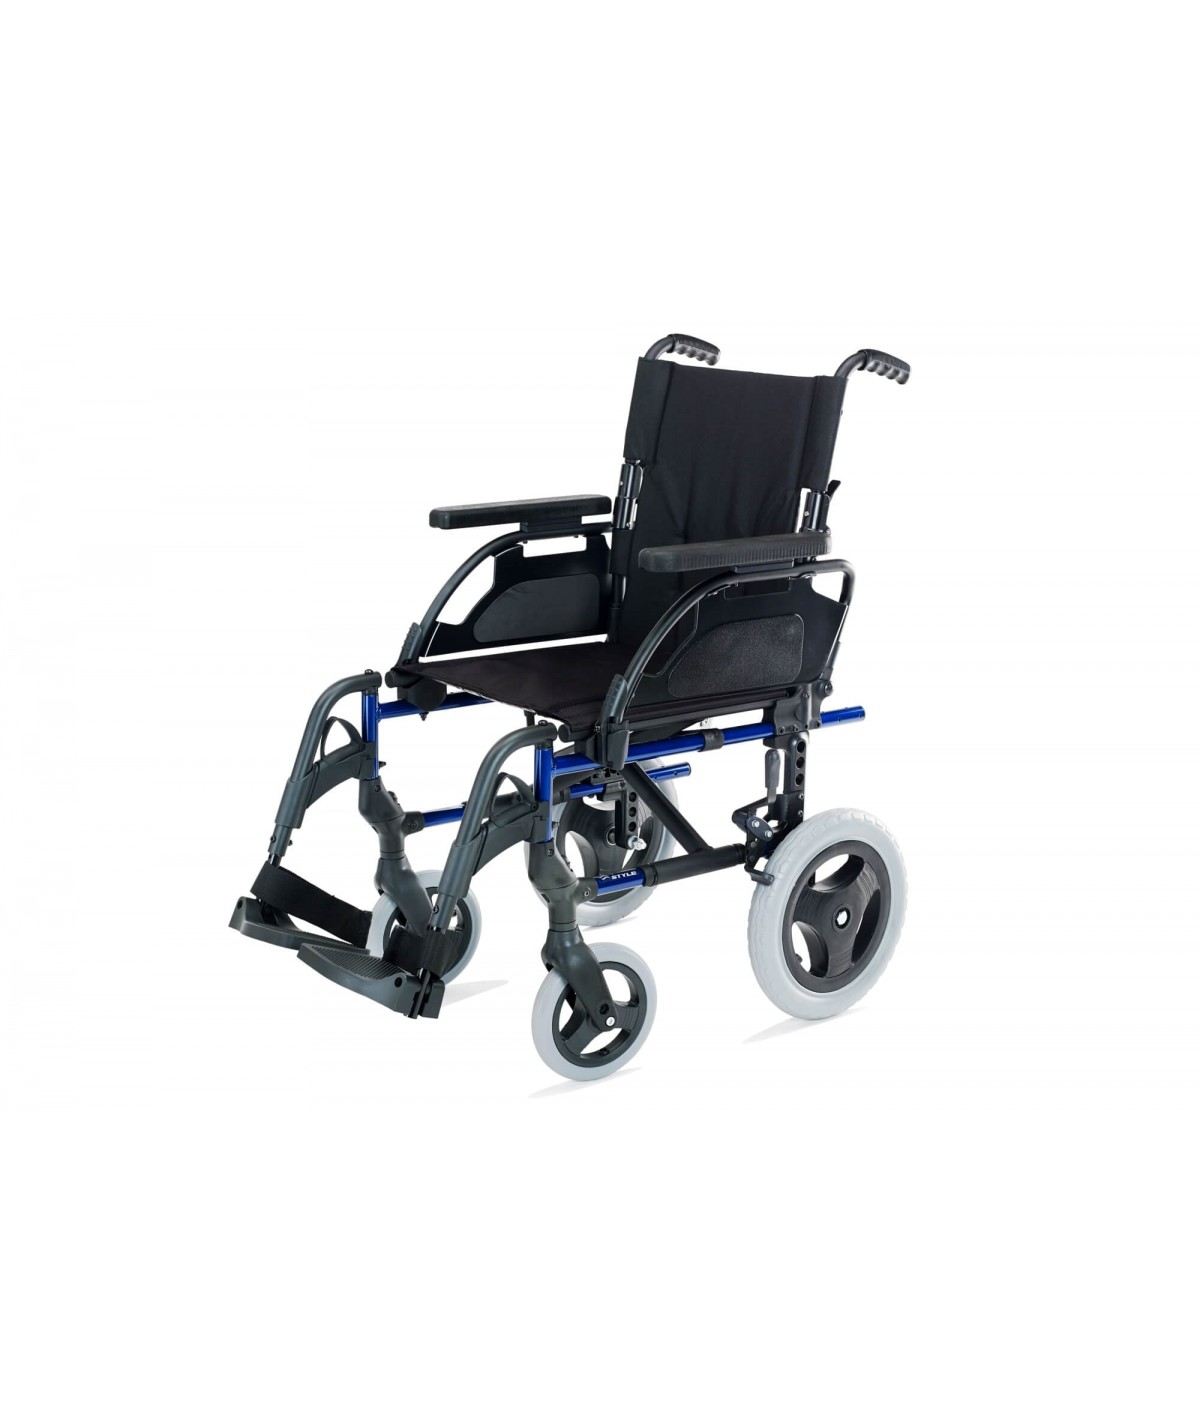 Bolsa de transporte para silla de ruedas Super Ligera